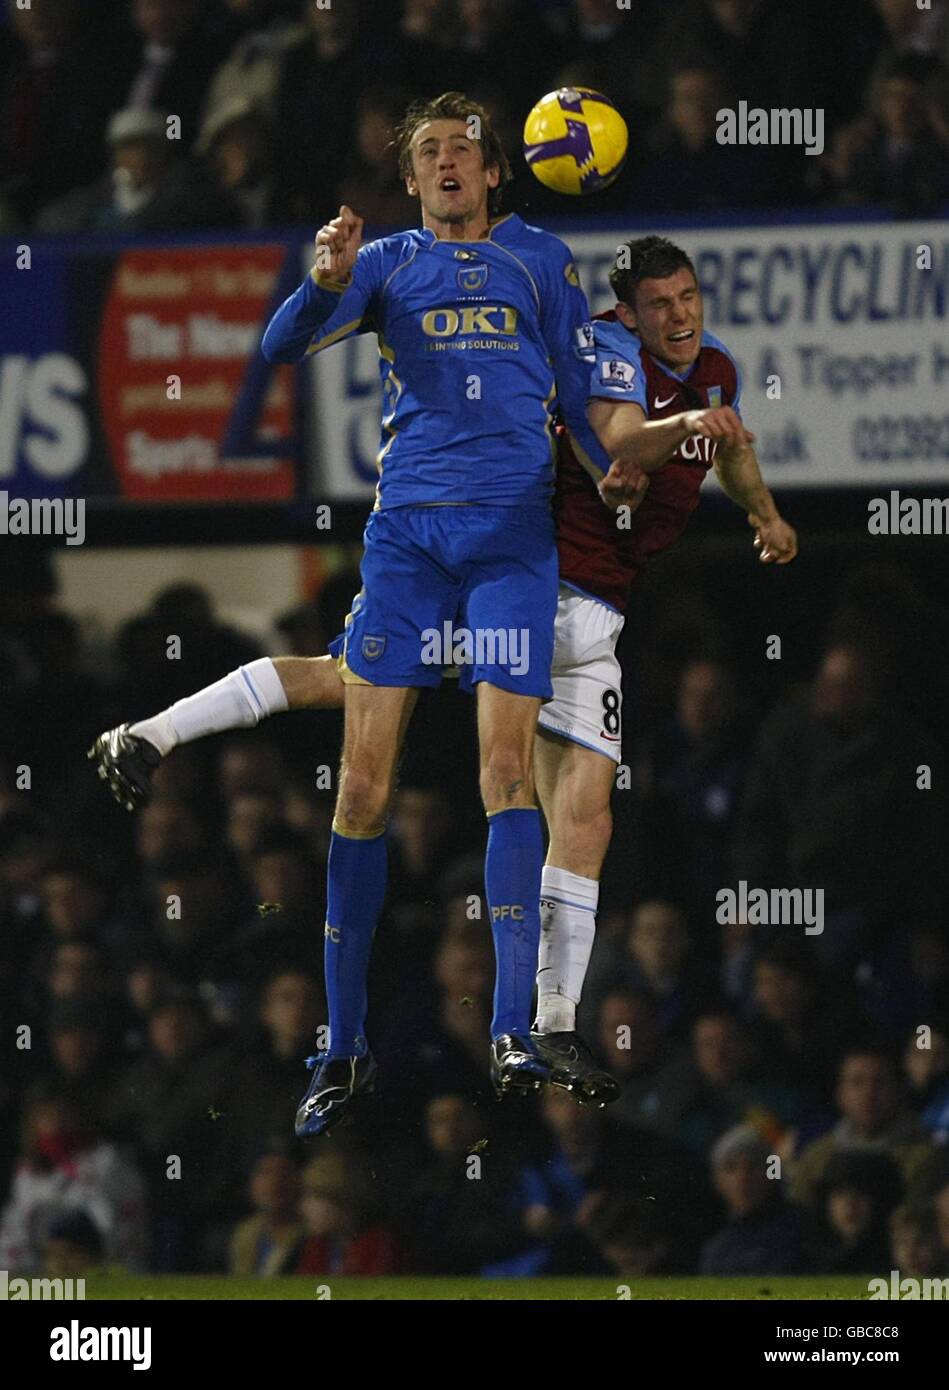 Calcio - Barclays Premier League - Portsmouth / Aston Villa - Fratton Park. Peter Crouch Aston Villa di Portsmouth, Gareth Barry (a destra), combatte per la palla in aria. Foto Stock